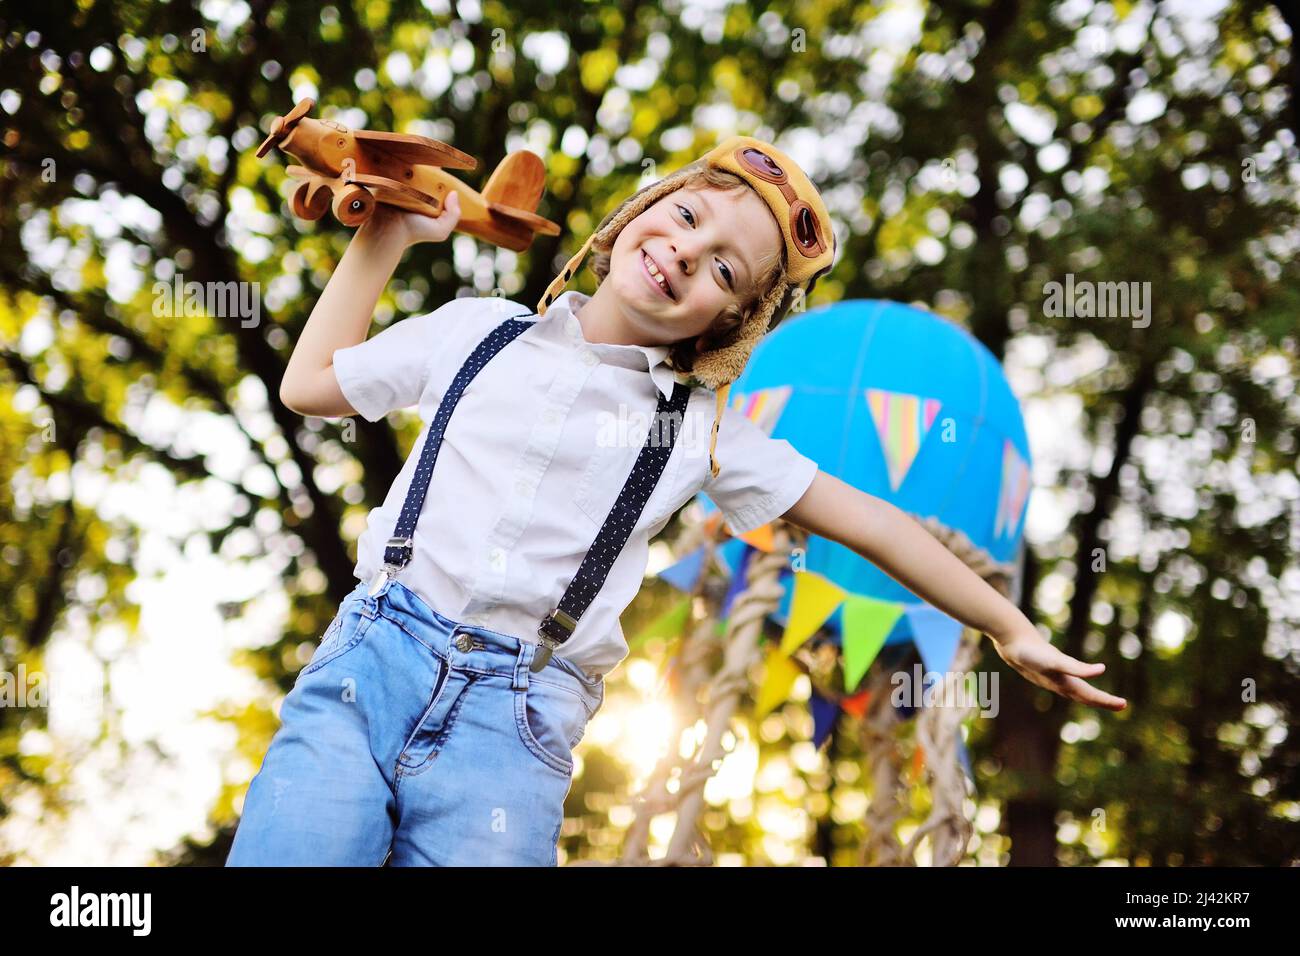 petit garçon dans une chemise blanche avec bretelles et boucles cheveux  dans un chapeau de pilote et des lunettes joue avec un plan en bois contre  le fond d'un panier Photo Stock -